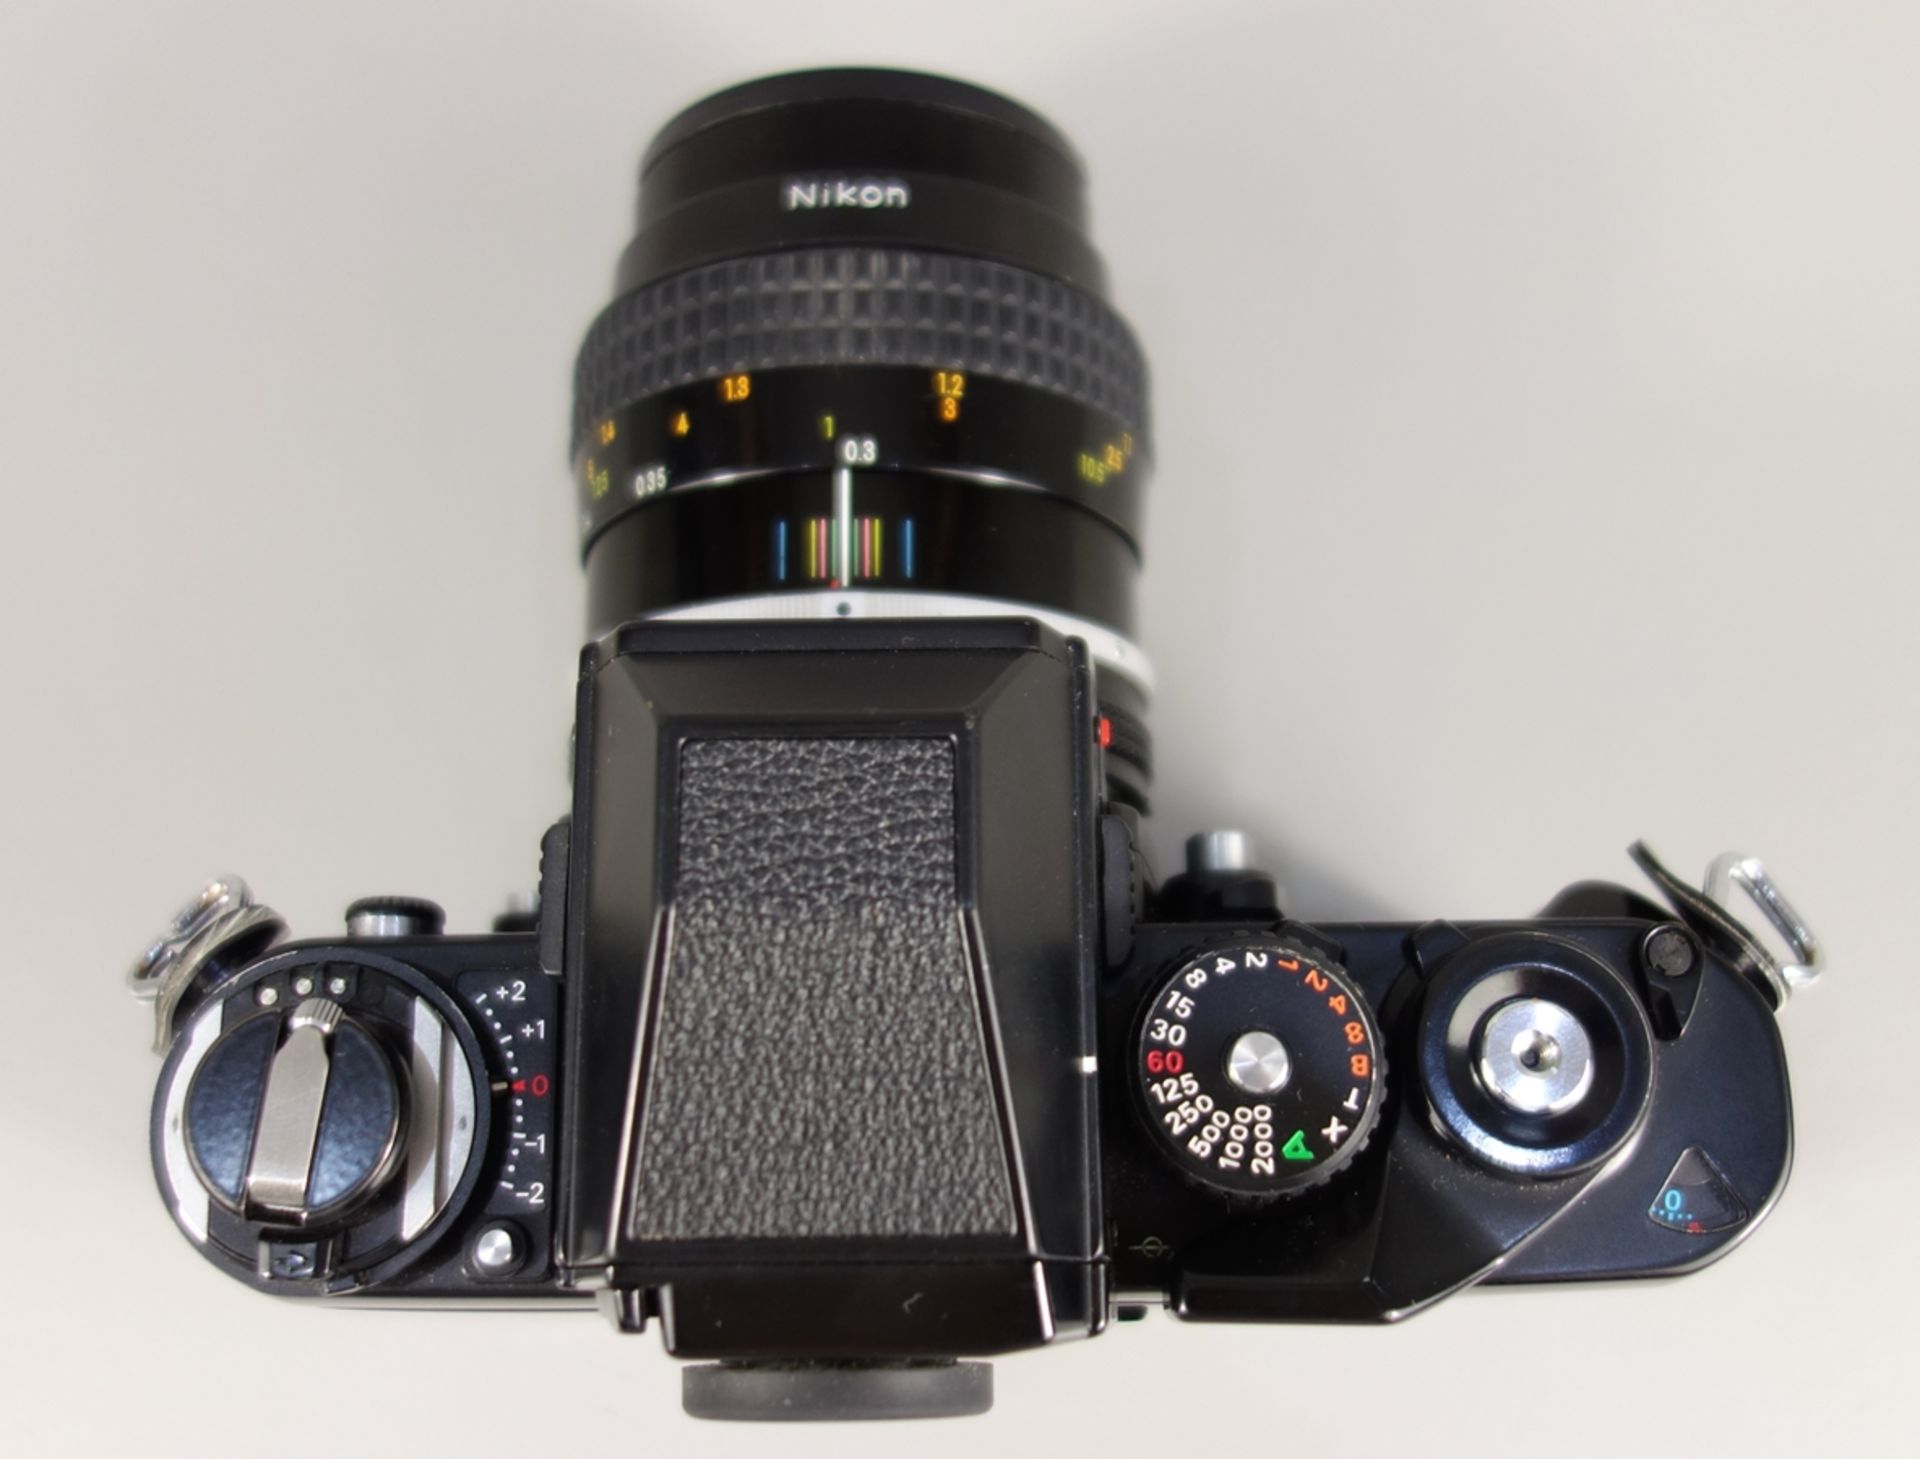 Nikon F3, Spiegelreflexkamera, schwarz, 1980er Jahre, Serien-Nr. 1212899, mit Objektiv Nikon Micro- - Bild 3 aus 5